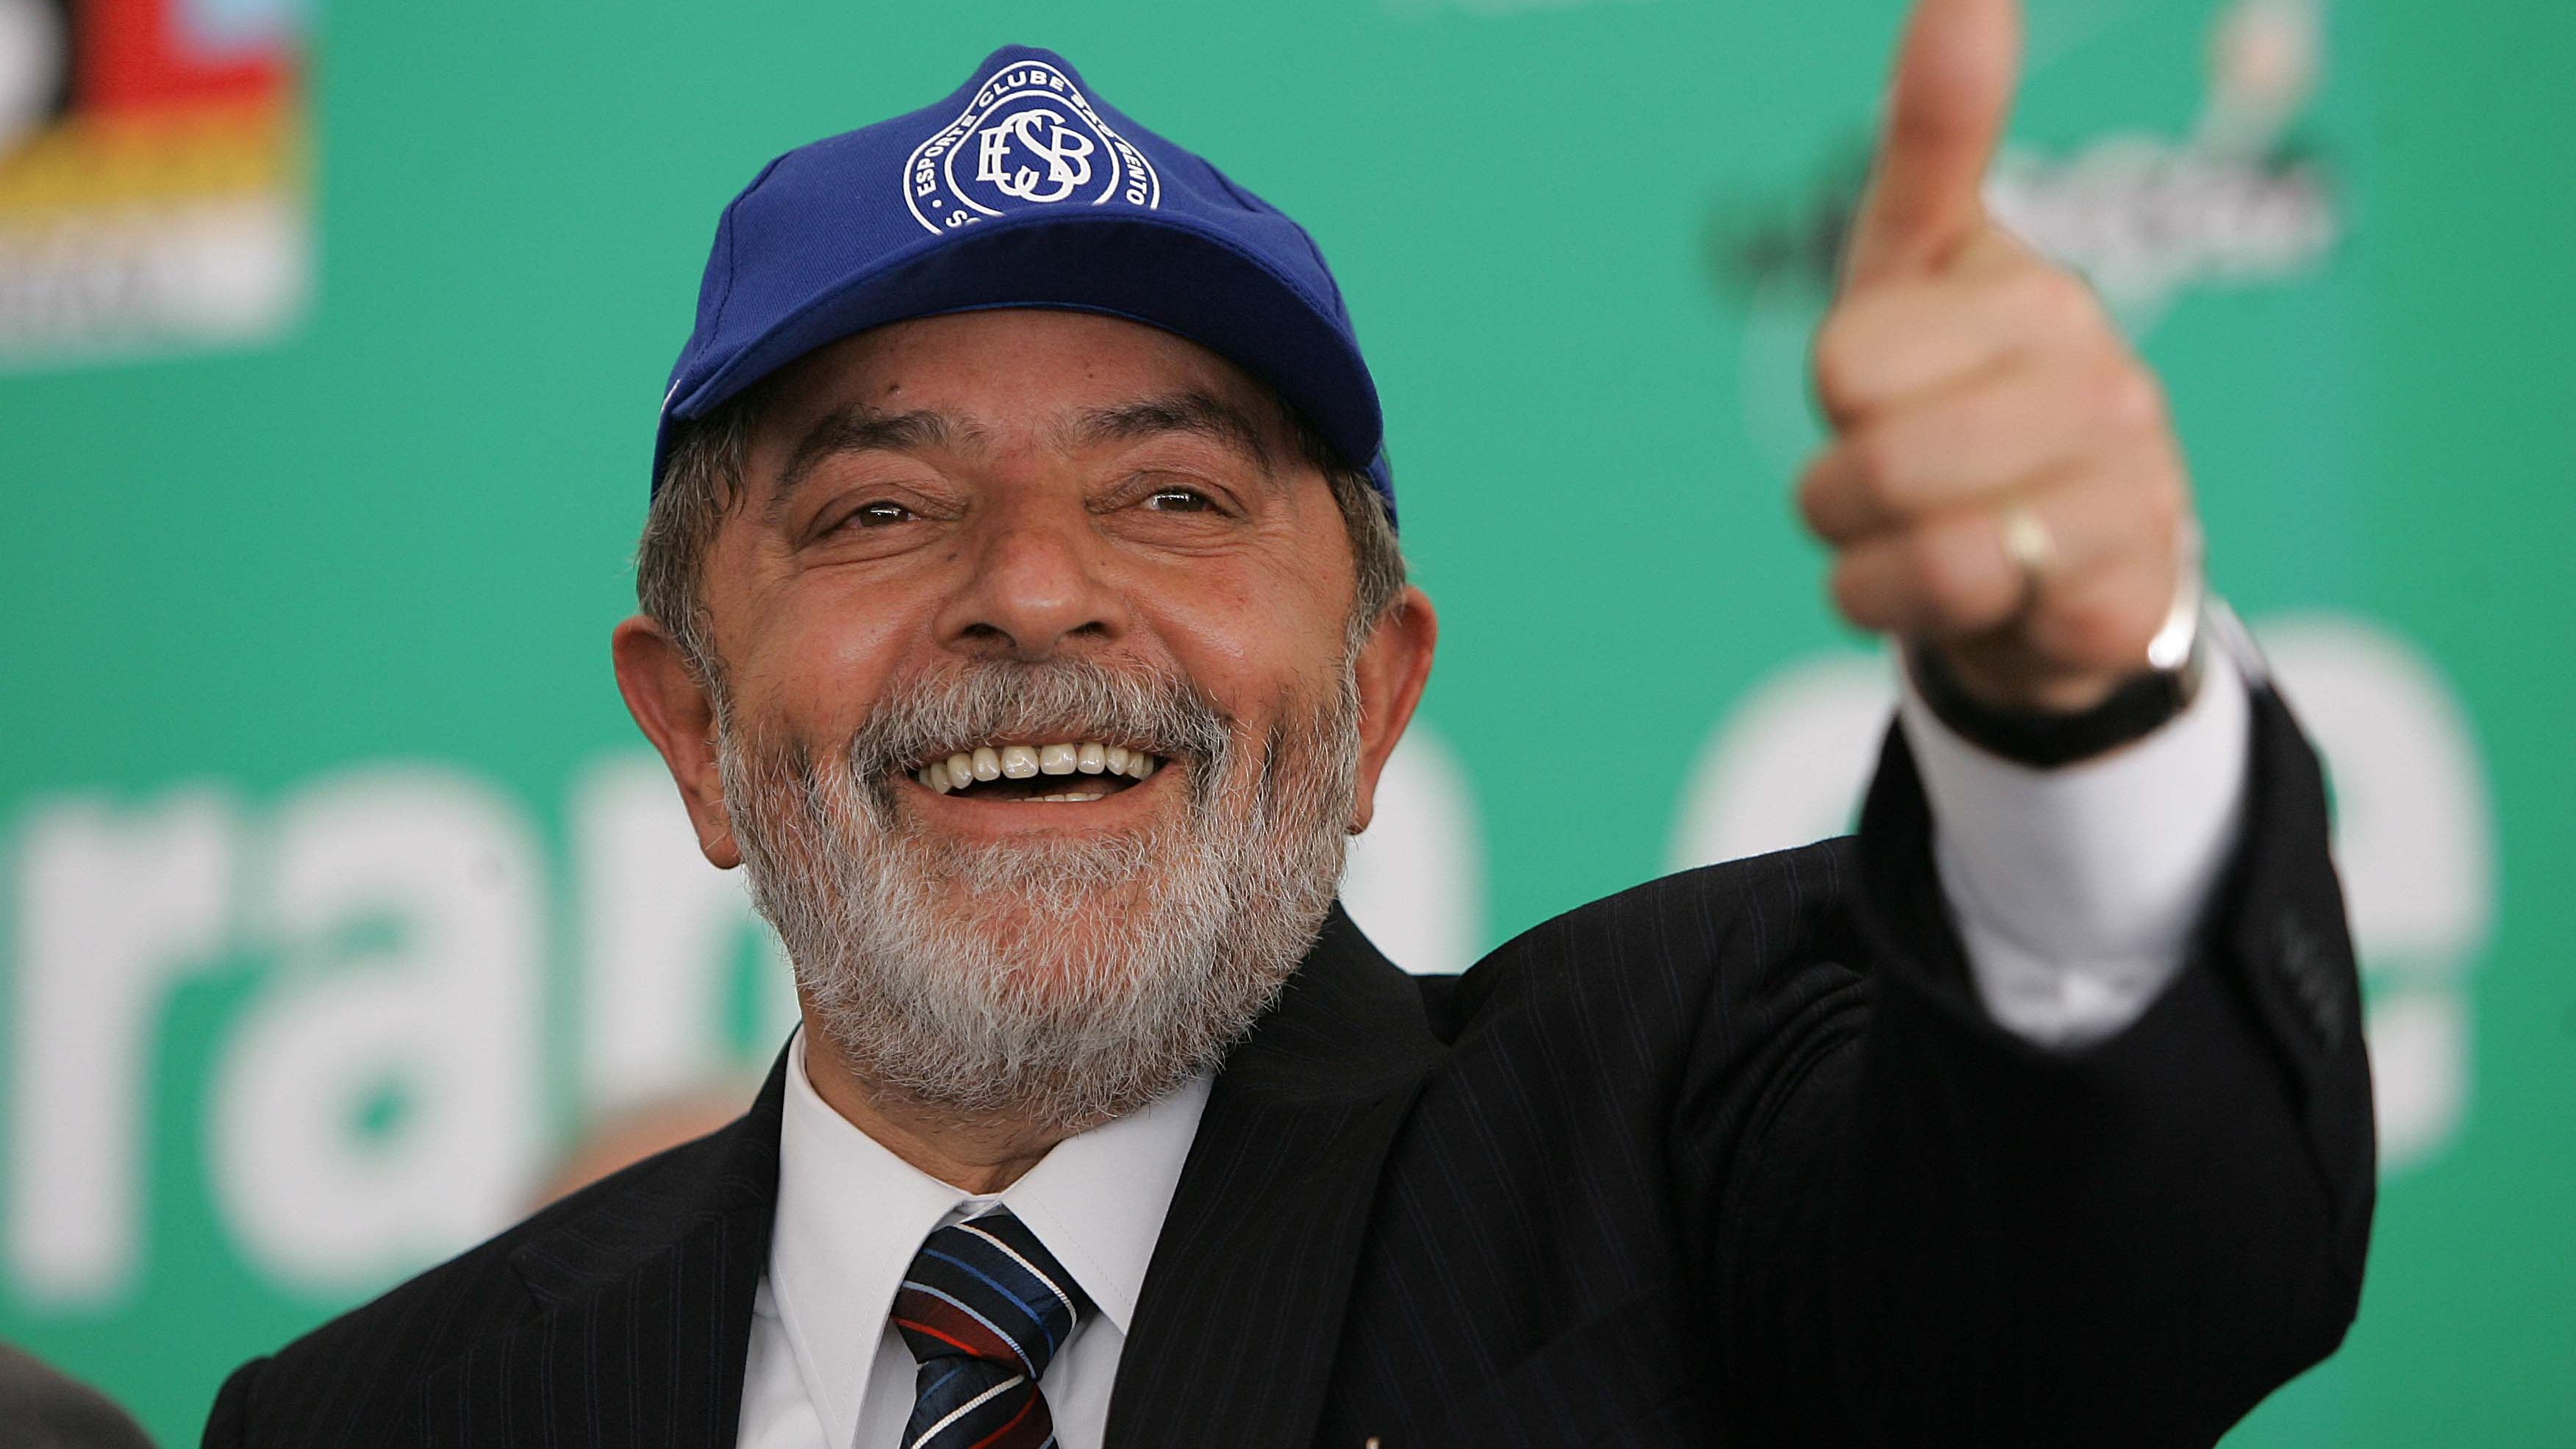 Luiz Inácio Lula da Silva de boné fazendo sinal positivo com a mão